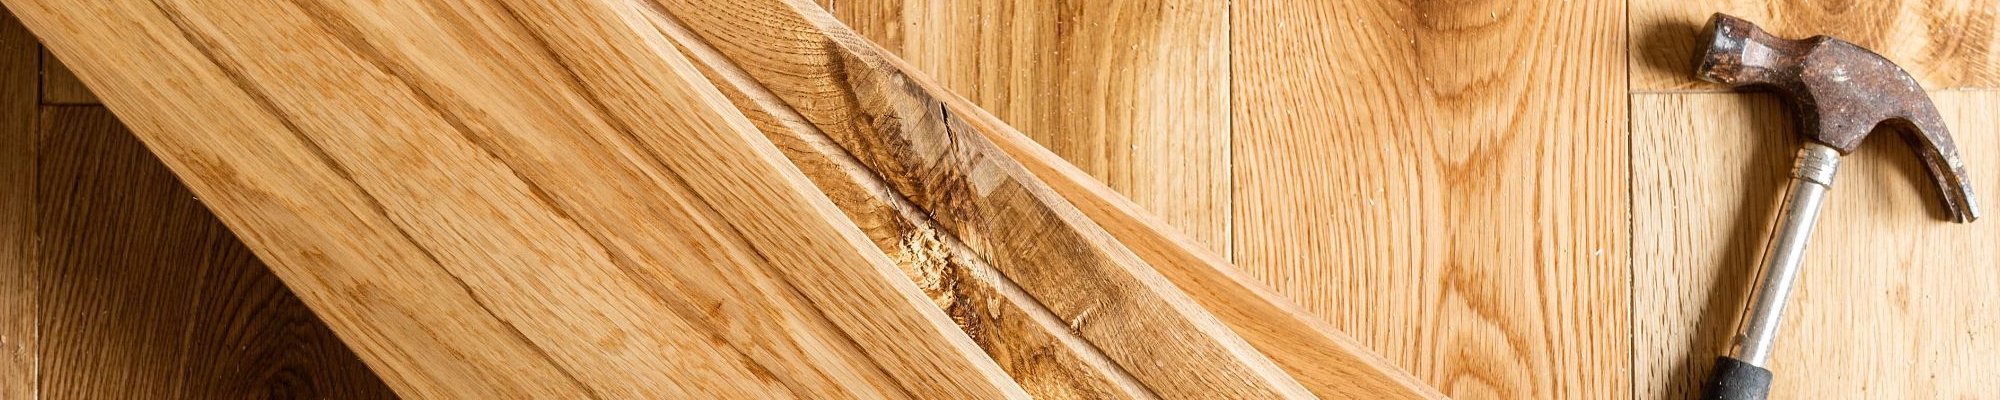 Hammer on wood planks Carpet For Less in Belton, MO